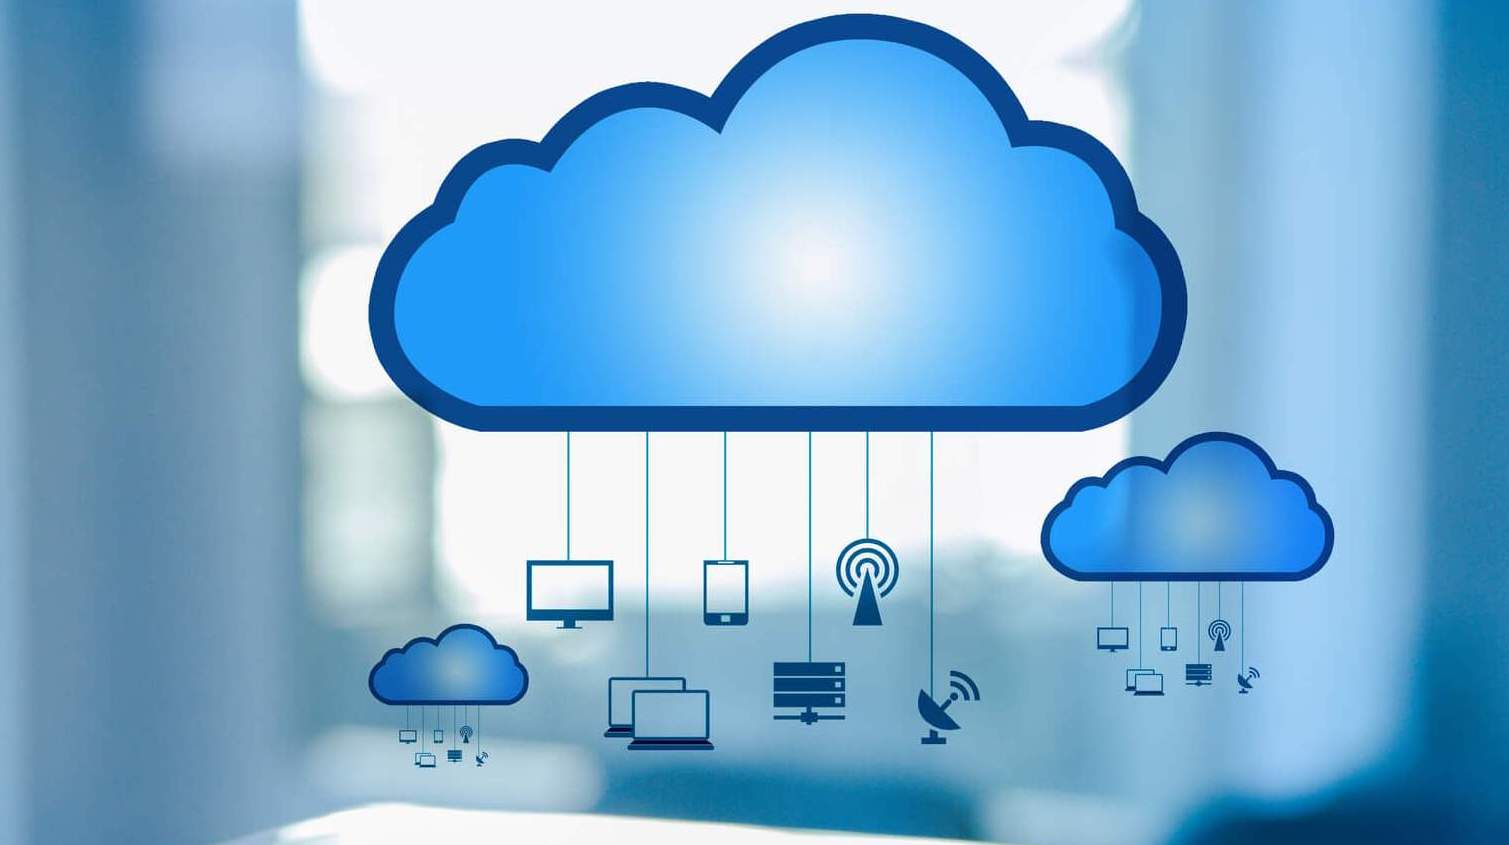 O Cloud Computing gera flexibilidade graças ao armazenamento adaptável e apresenta diferenciais que simplificam a gestão e o acesso aos dados.